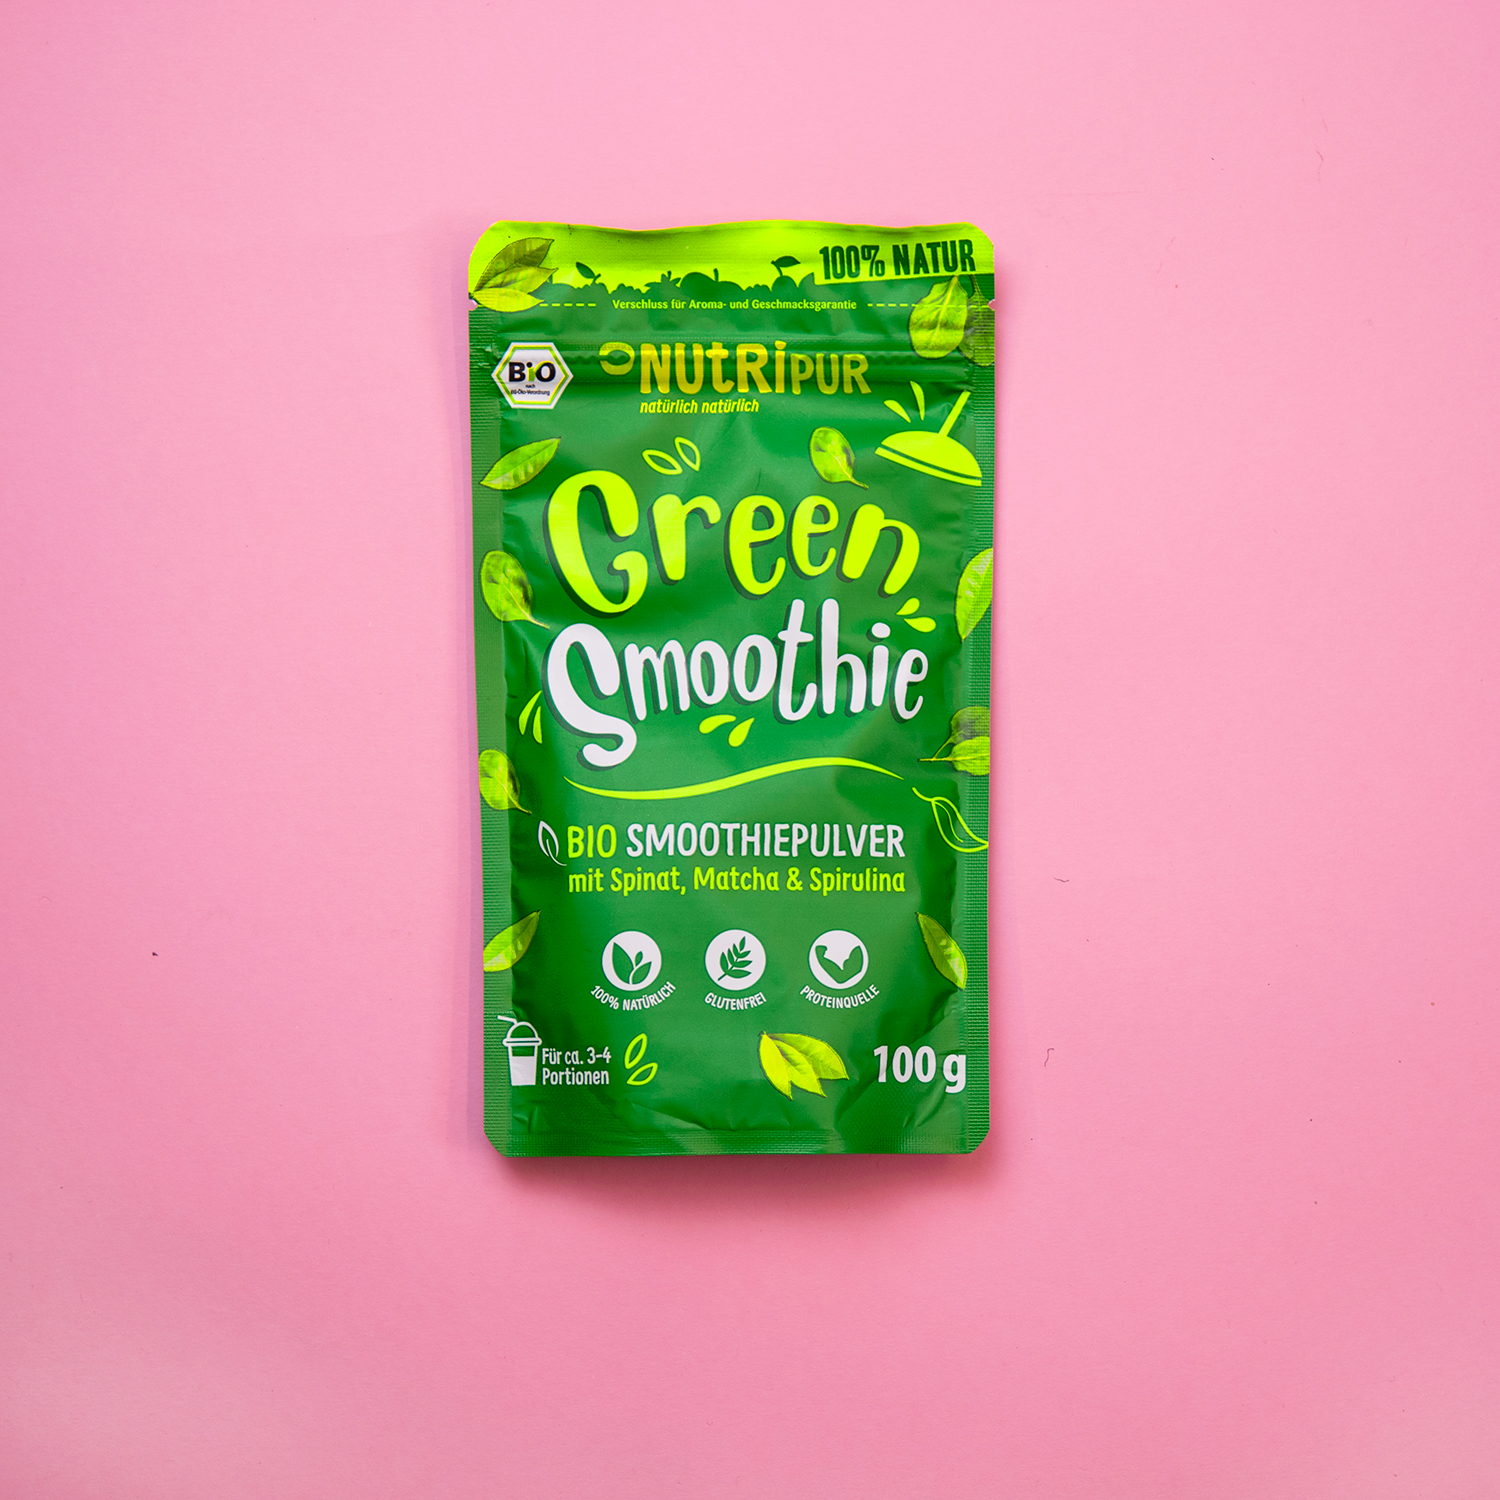 Green Smoothie Smoothie Powder Spinach Matcha Spirulina Super Food Natural